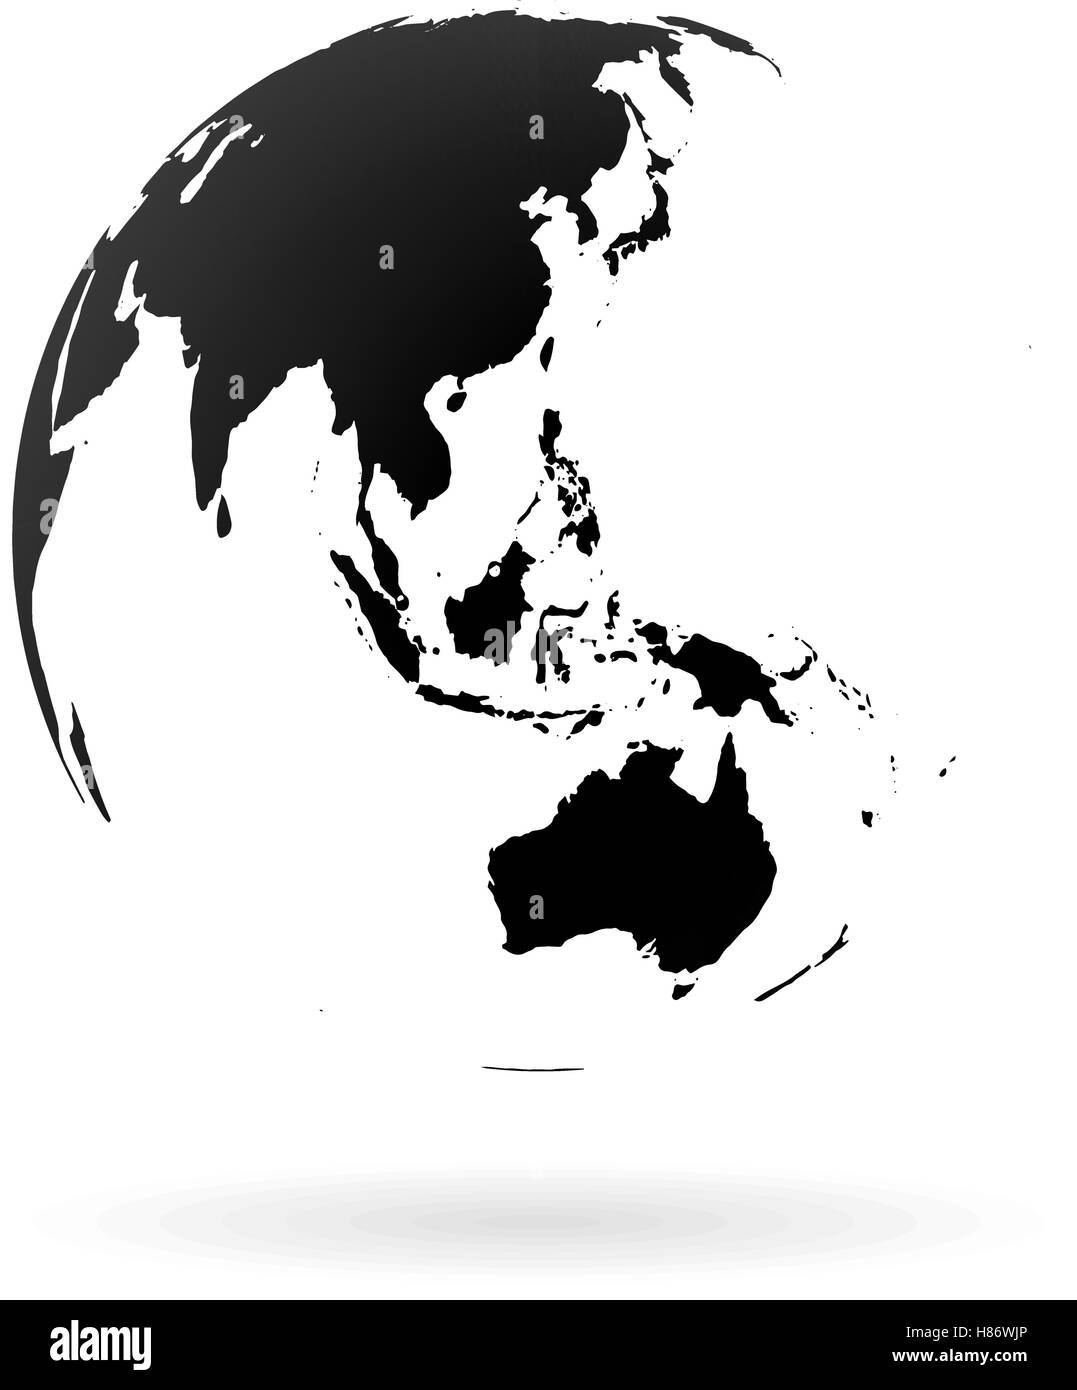 Globe terrestre très détaillées, symbole de l'Australie, des océans Indien et Pacifique. Noir sur fond blanc. Illustration de Vecteur